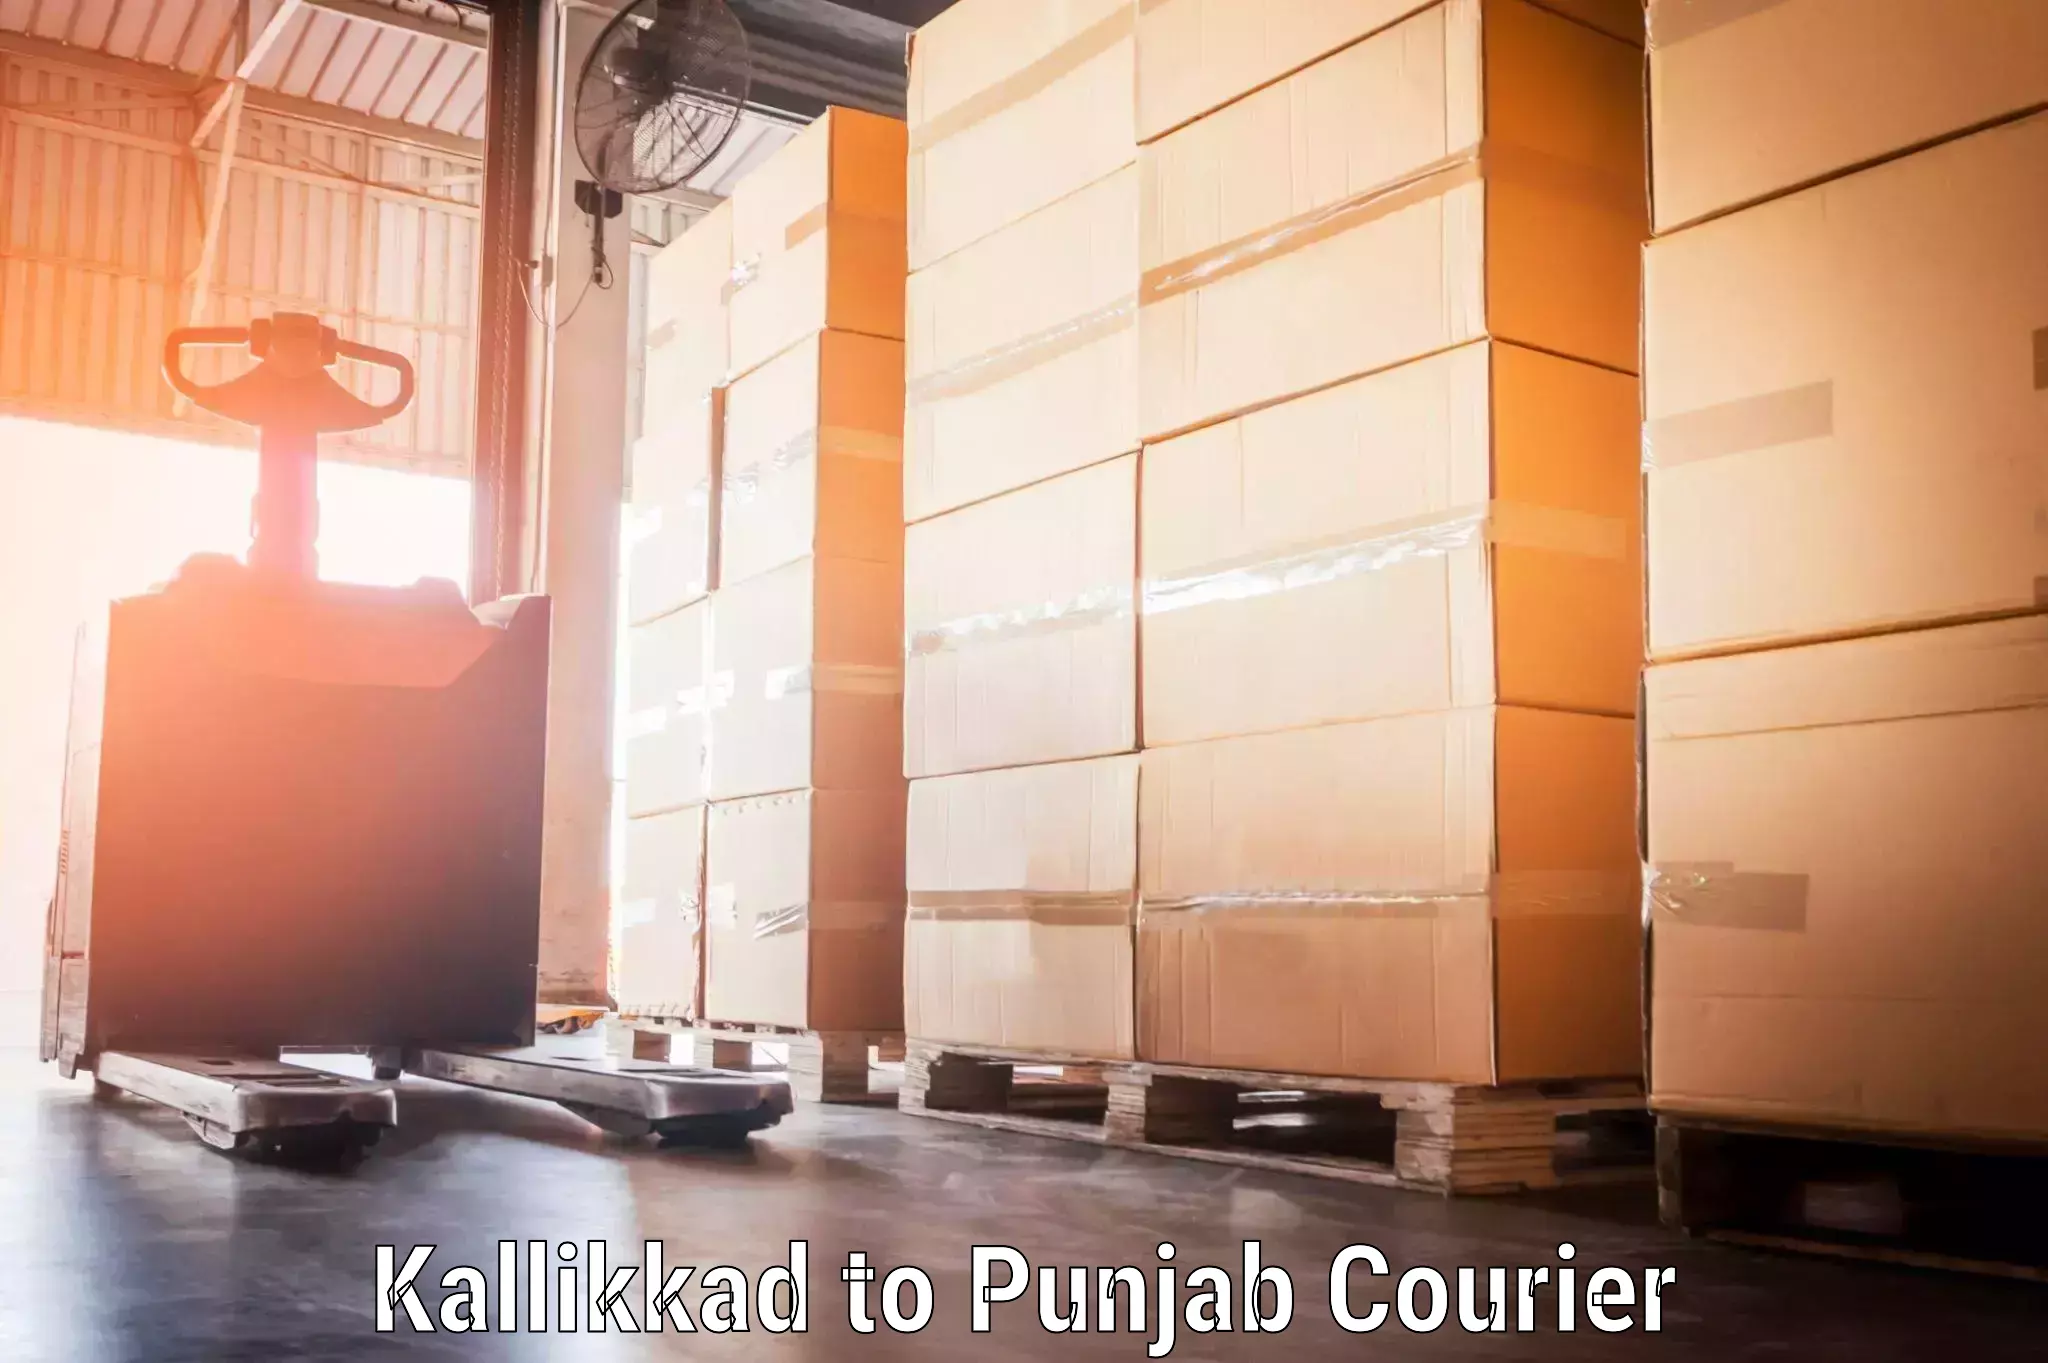 Reliable luggage courier Kallikkad to Faridkot